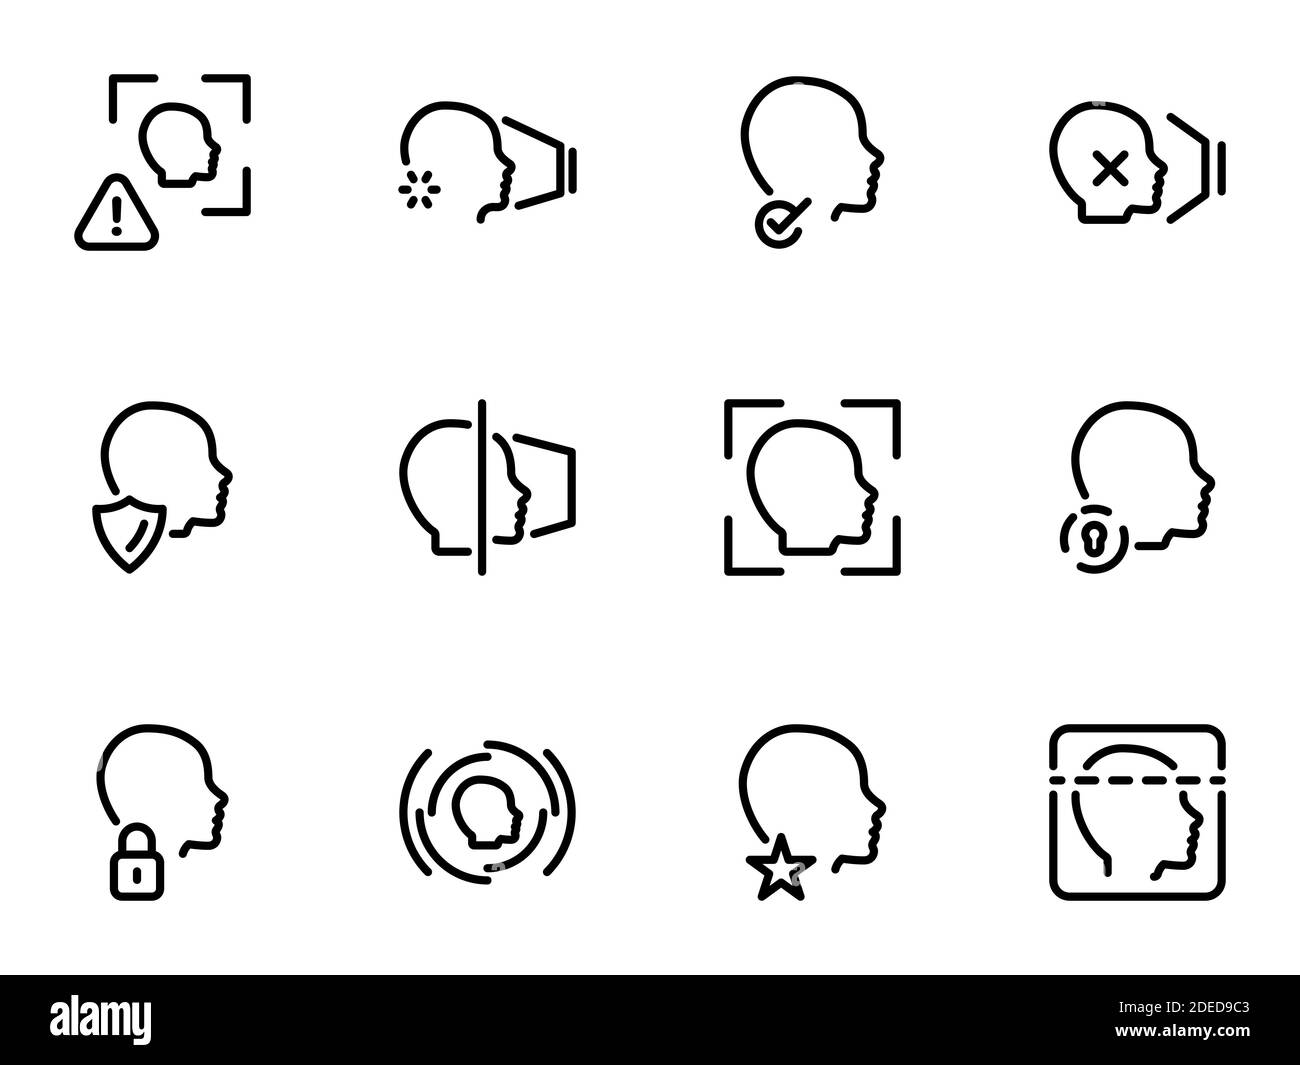 Set di icone vettoriali nere, isolate su sfondo bianco. Illustrazione su un tema riconoscimento del volto Illustrazione Vettoriale